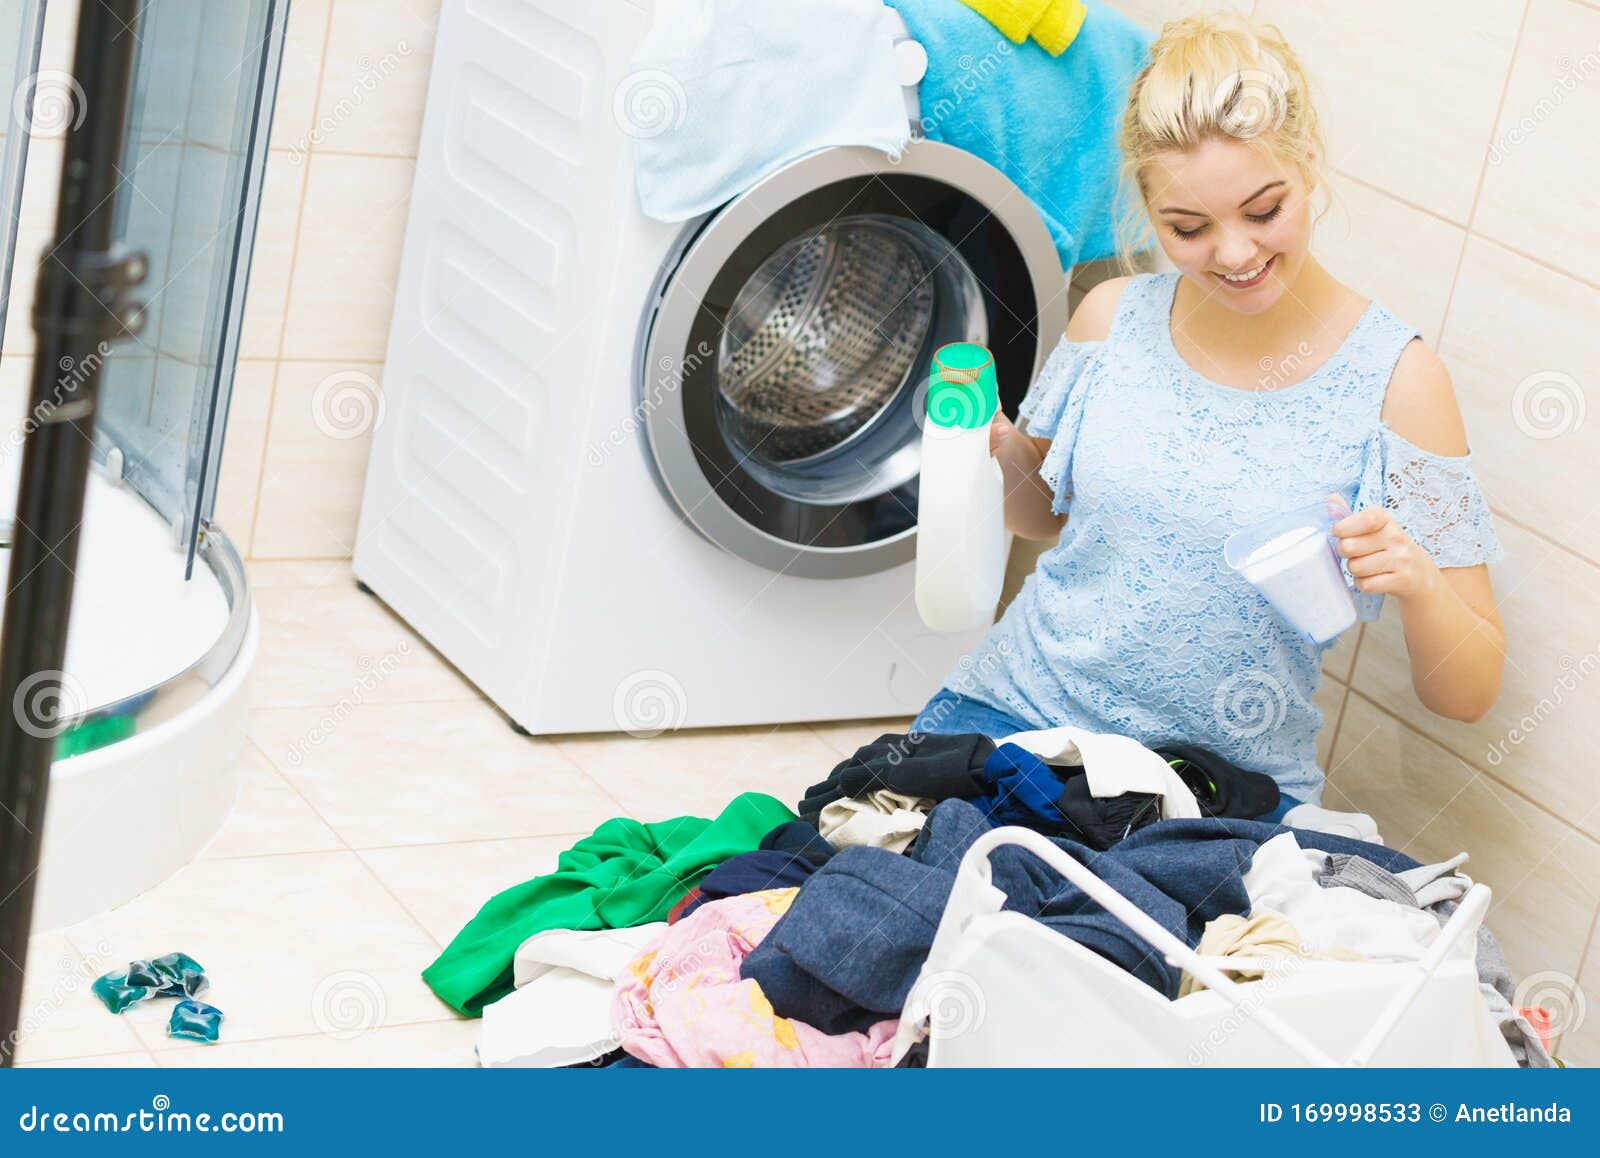 Mujer lavando ropa de archivo. Imagen de colores - 169998533